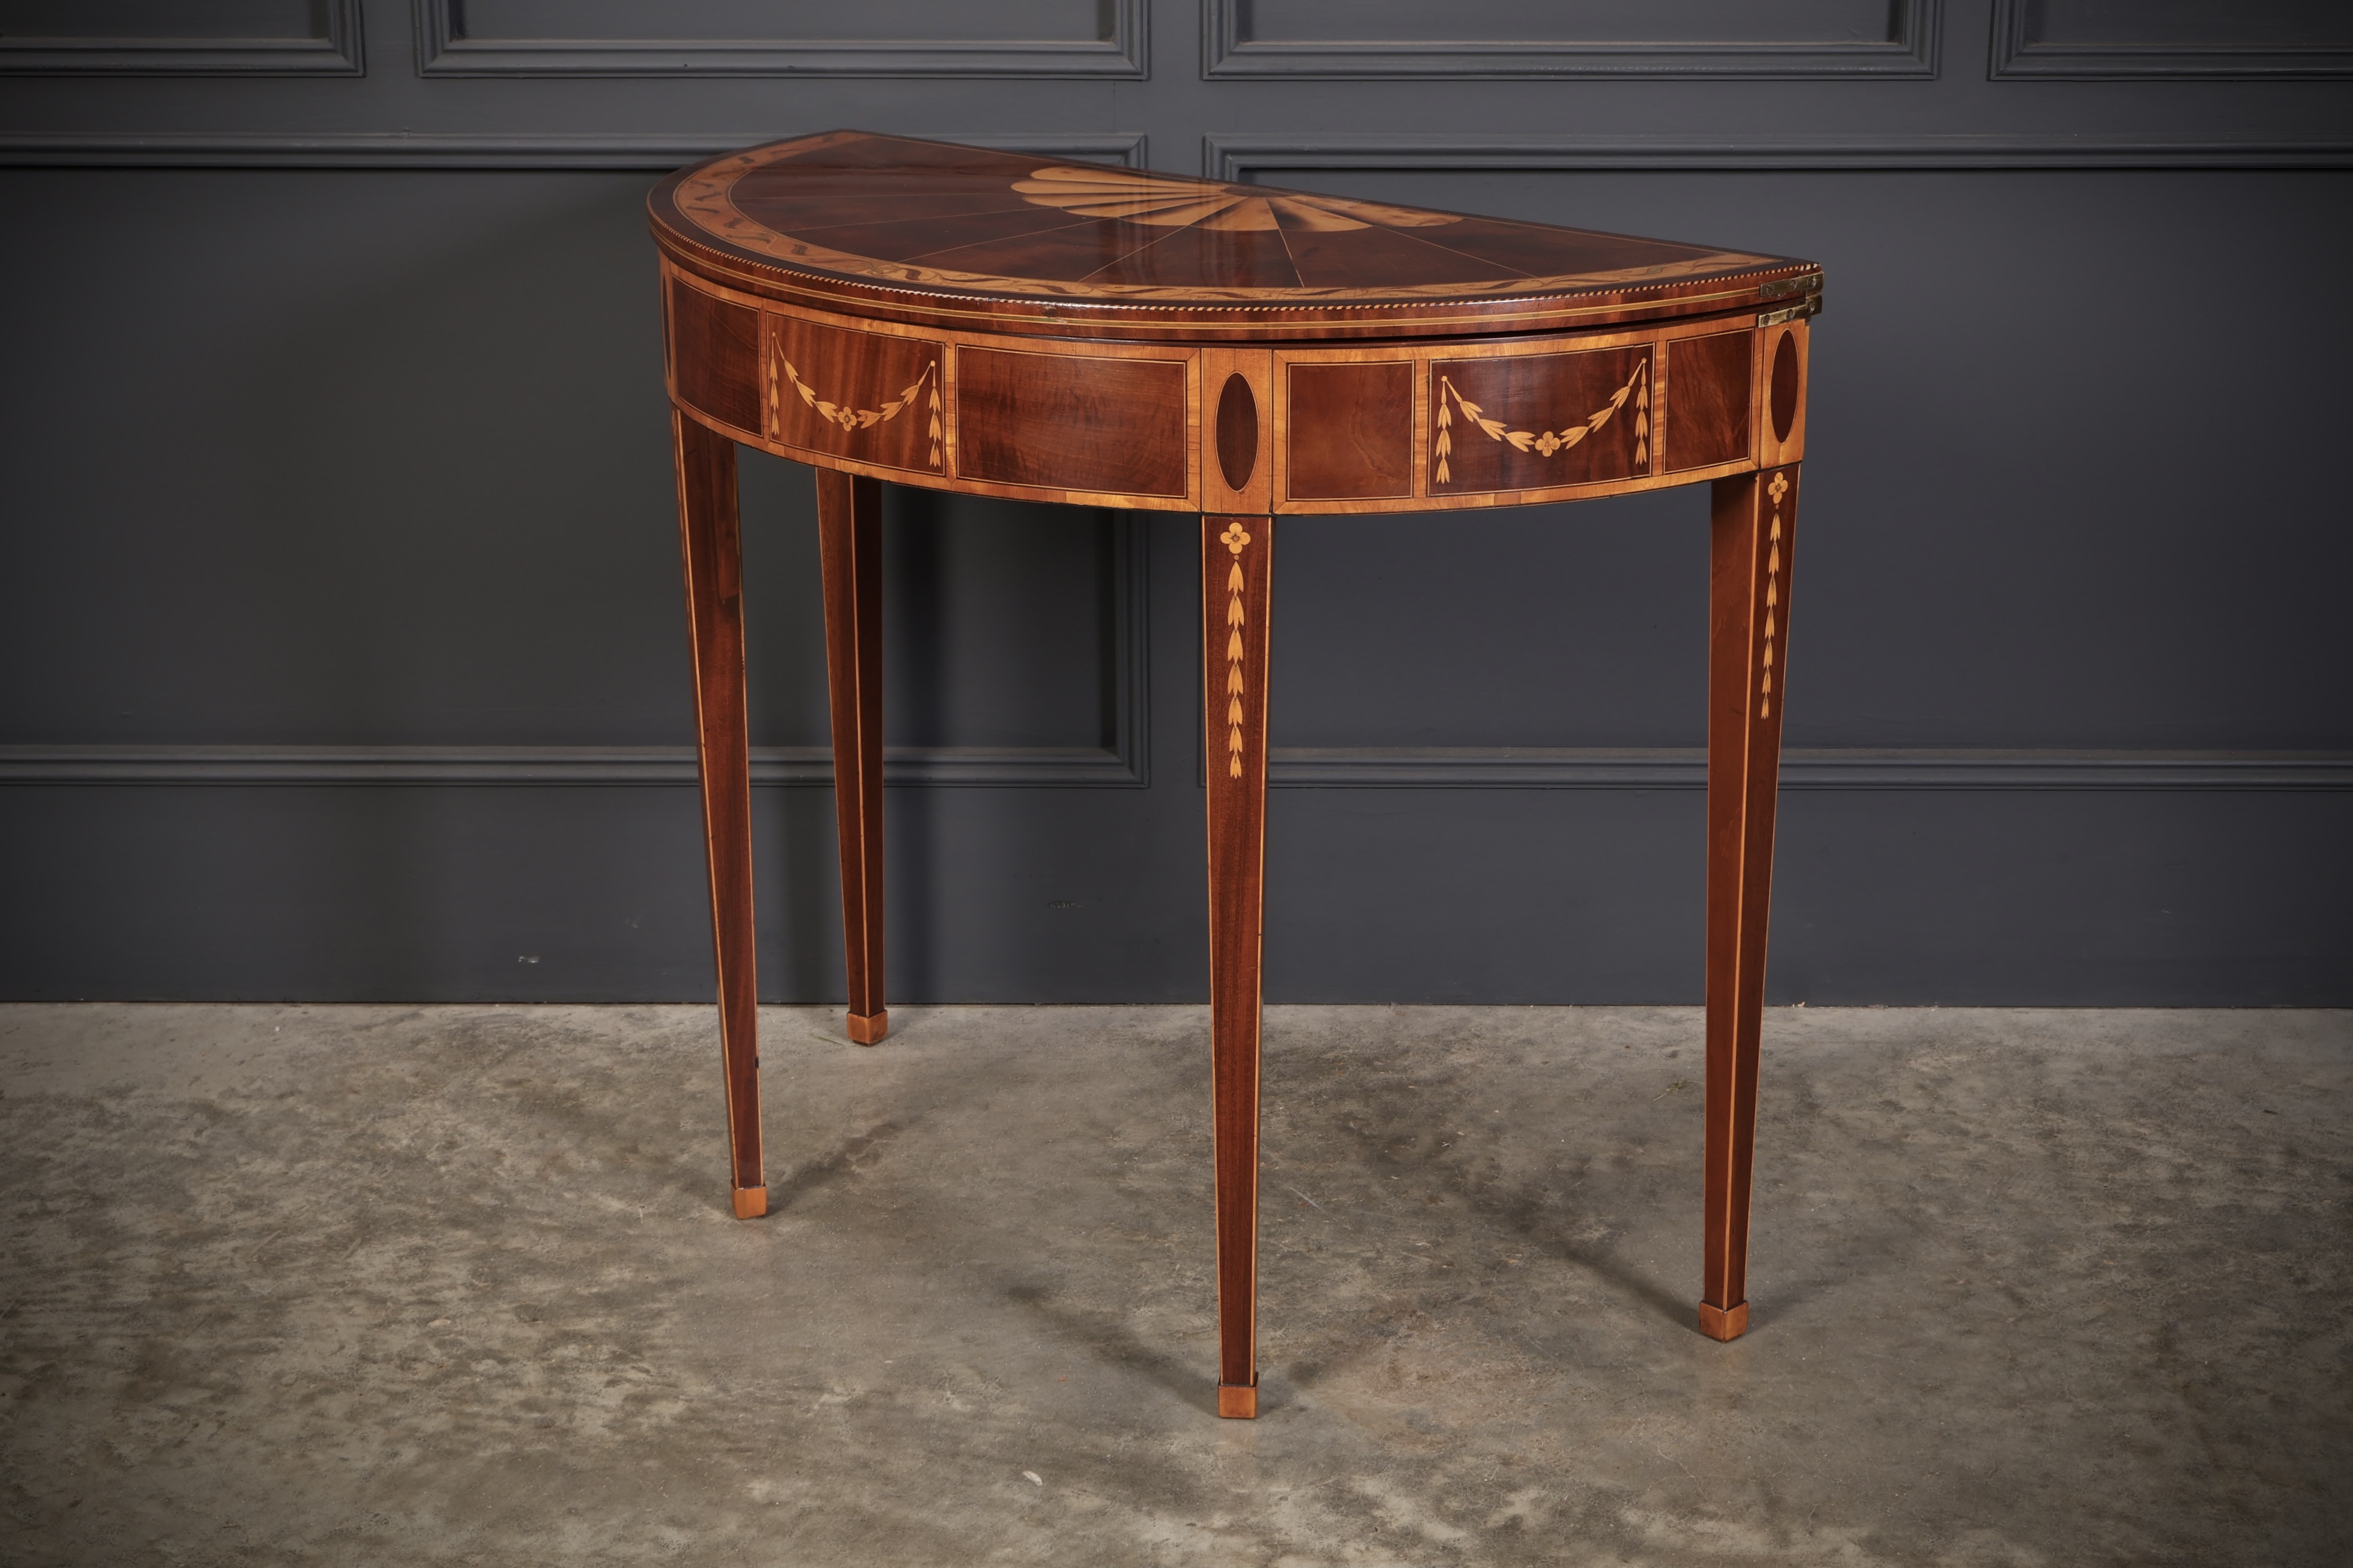 Rare 18th Century Marquetry Inlaid Tea Table 18th century Antique Furniture 11